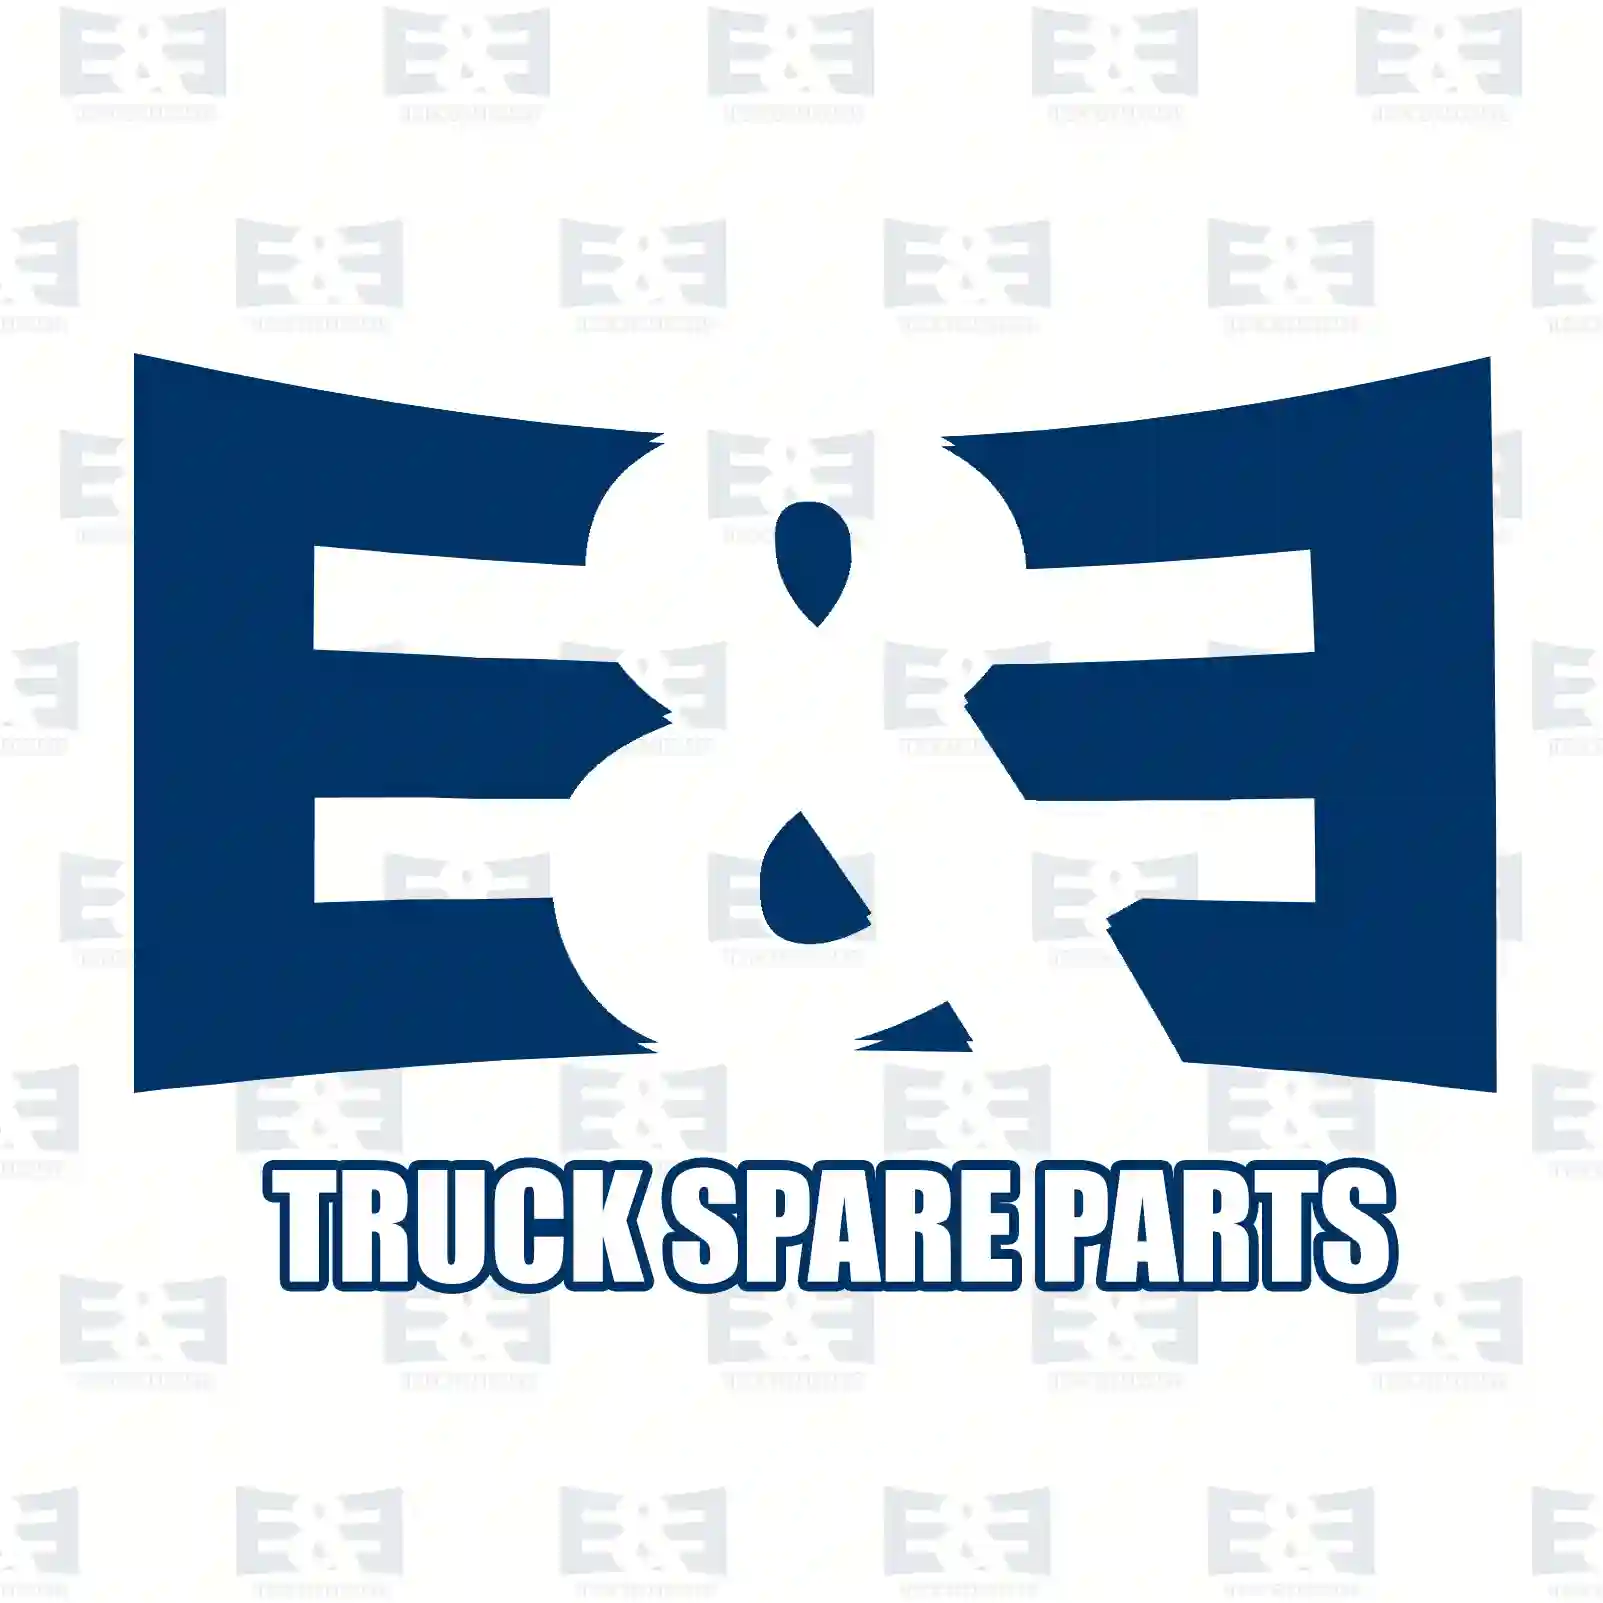 Repair kit, socket, 2E2298217, 5010306490S2, 3963412S2, ZG40093-0008 ||  2E2298217 E&E Truck Spare Parts | Truck Spare Parts, Auotomotive Spare Parts Repair kit, socket, 2E2298217, 5010306490S2, 3963412S2, ZG40093-0008 ||  2E2298217 E&E Truck Spare Parts | Truck Spare Parts, Auotomotive Spare Parts